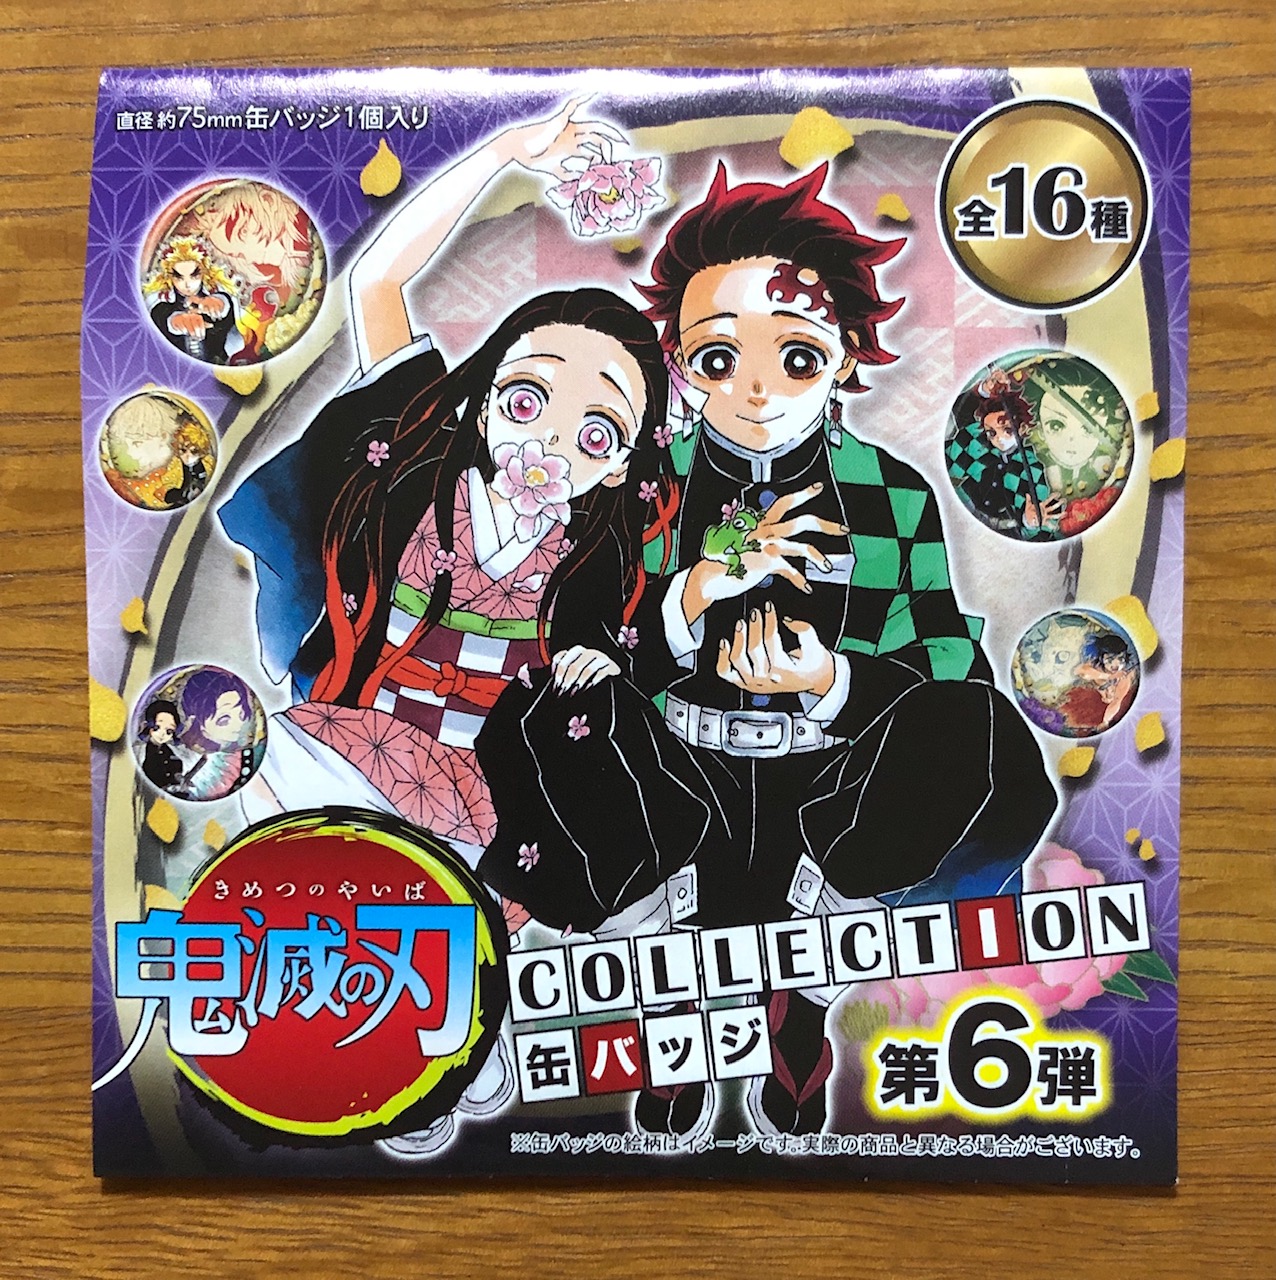 鬼滅の刃 COLLECTION 缶バッジ第1〜6弾コンプリートセット-